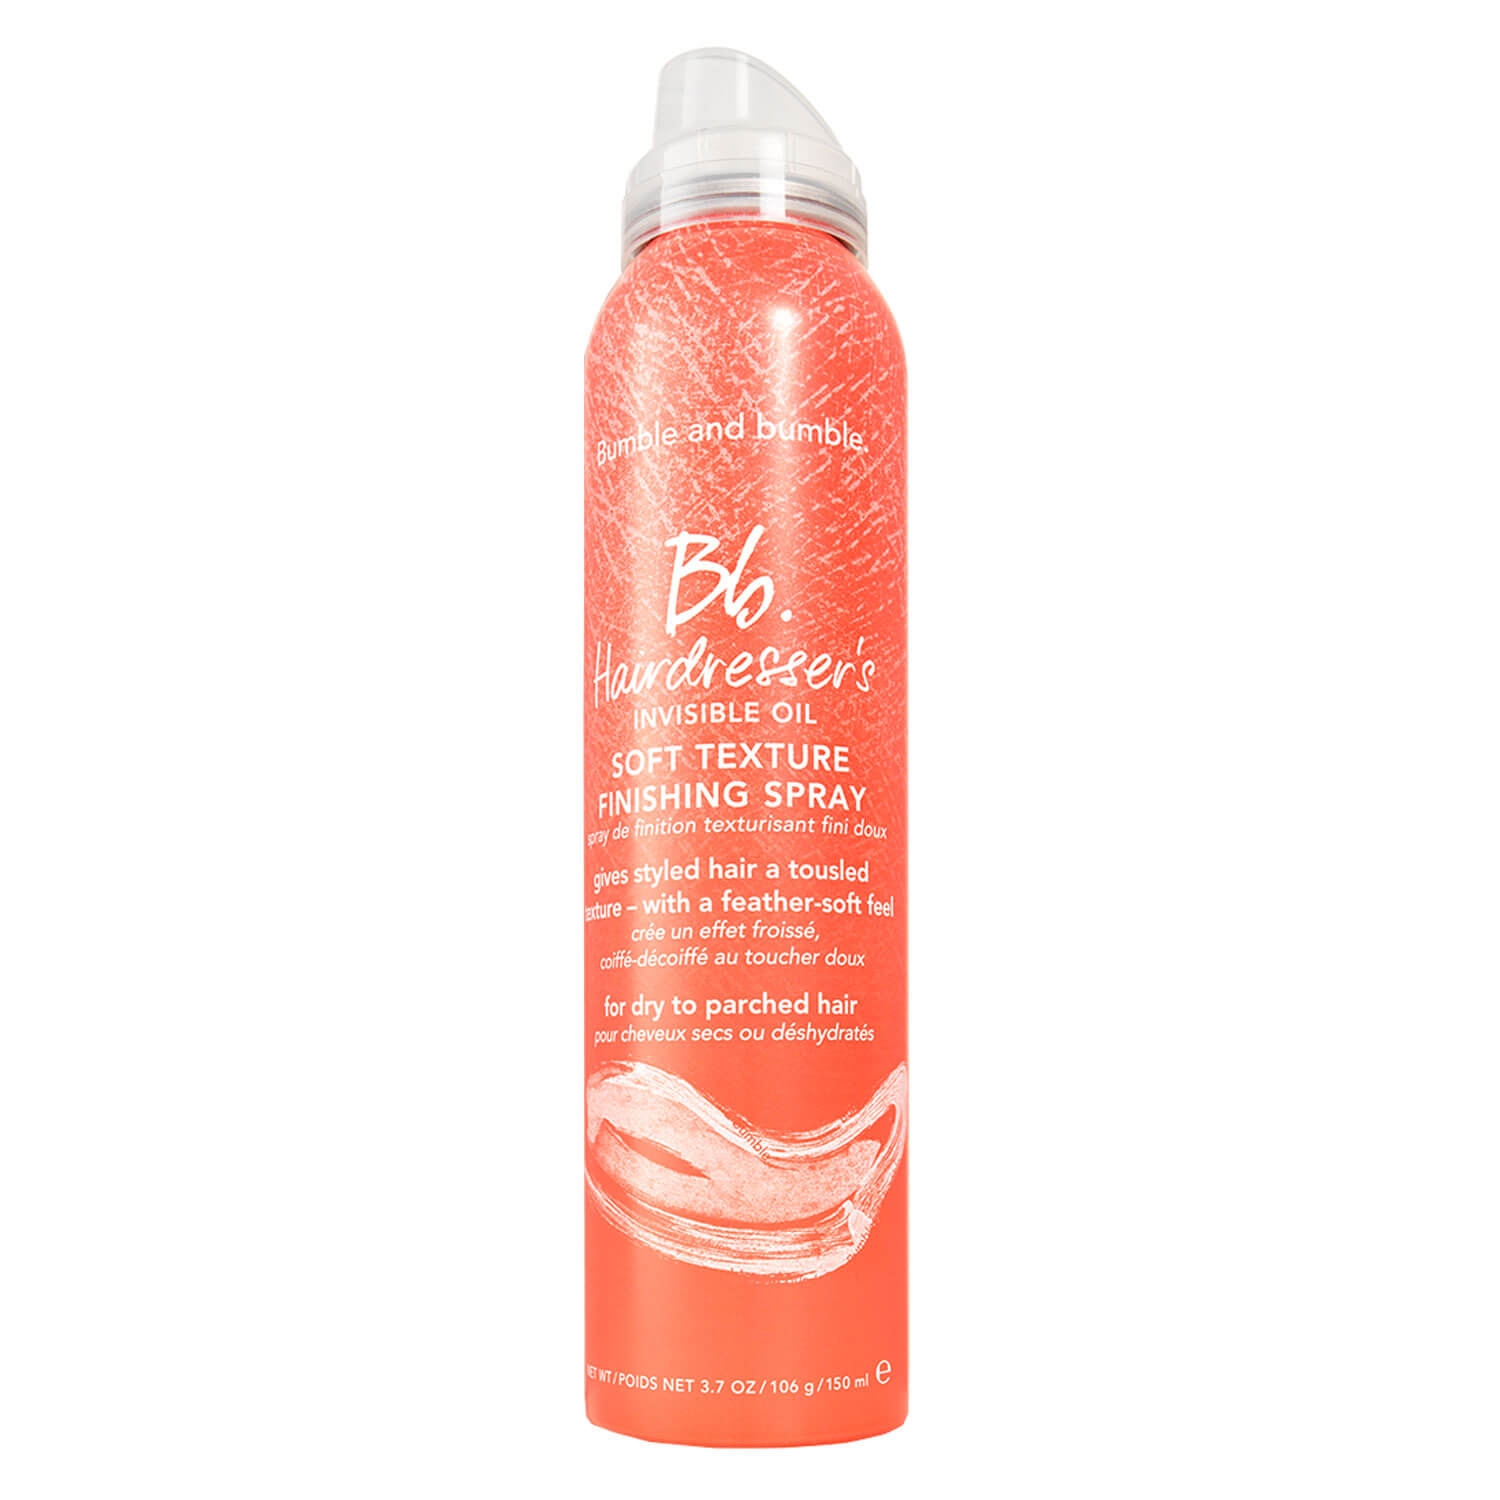 Produktbild von Bb. Hairdresser's Invisible Oil - Soft Texture Spray